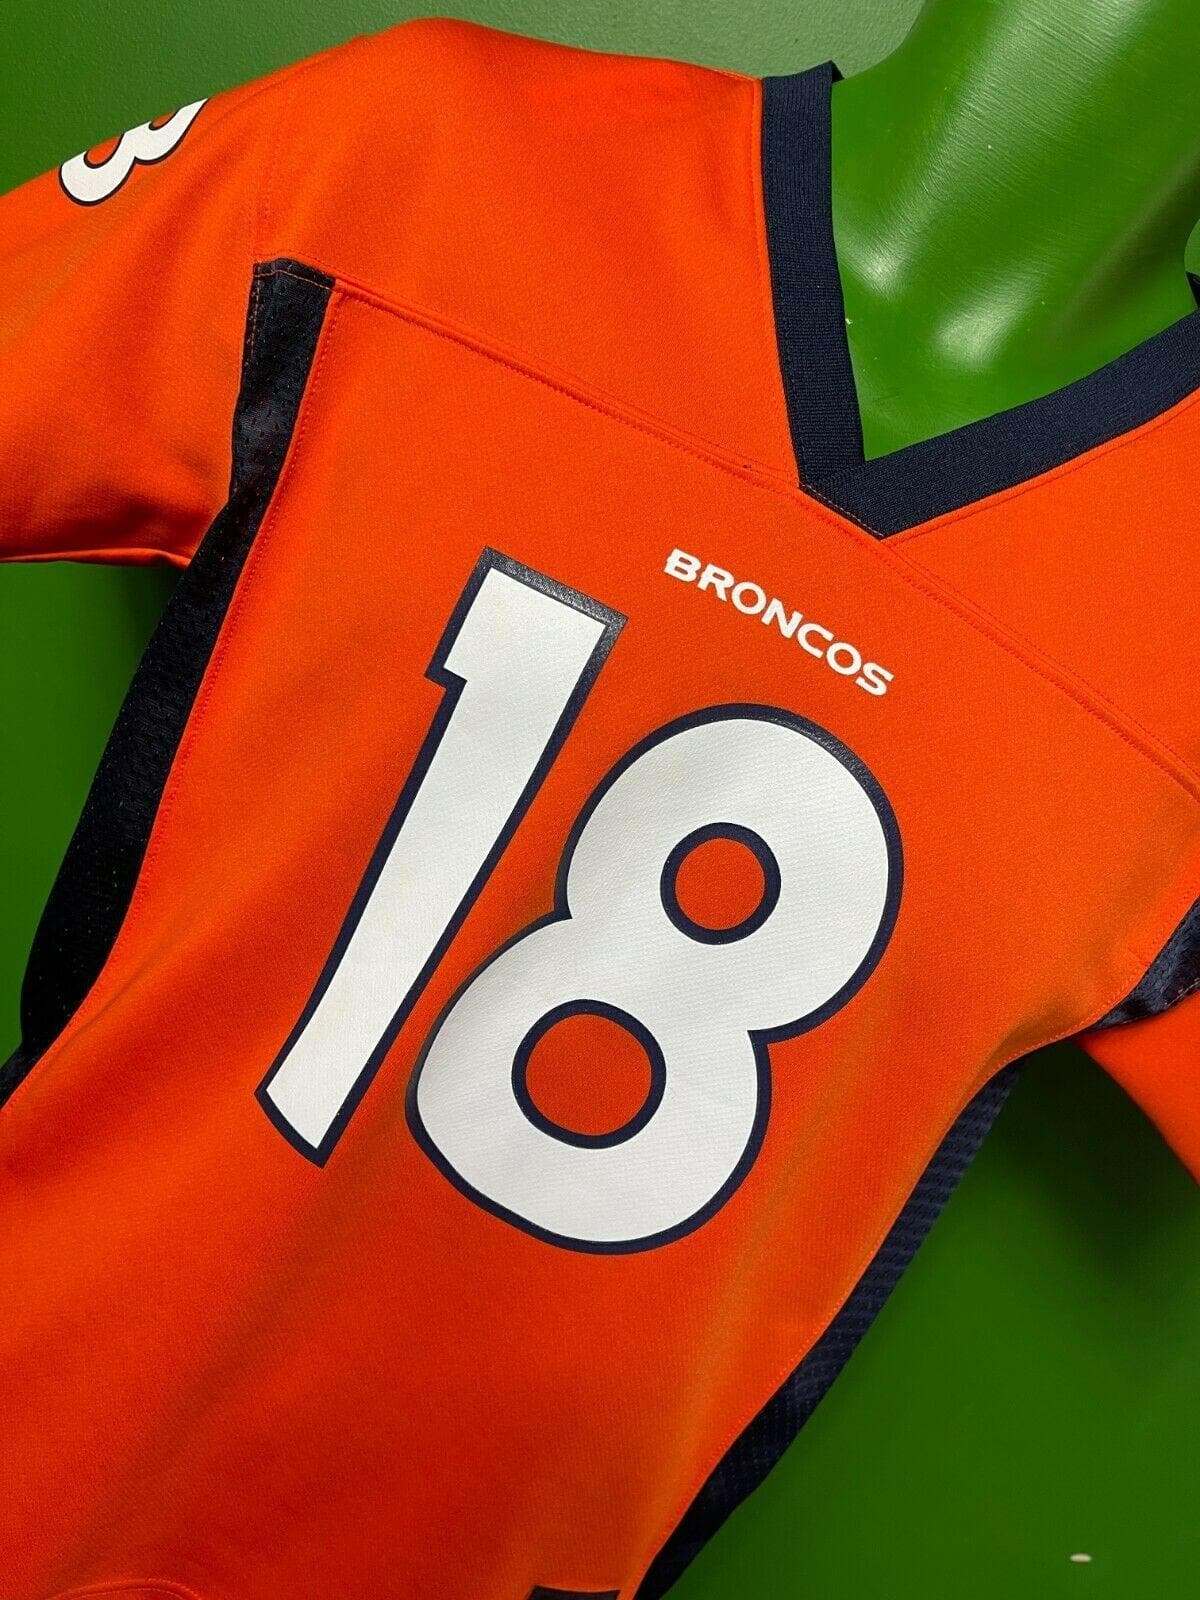 NFL Denver Broncos Peyton Manning #18 Jersey Youth Medium 10-12